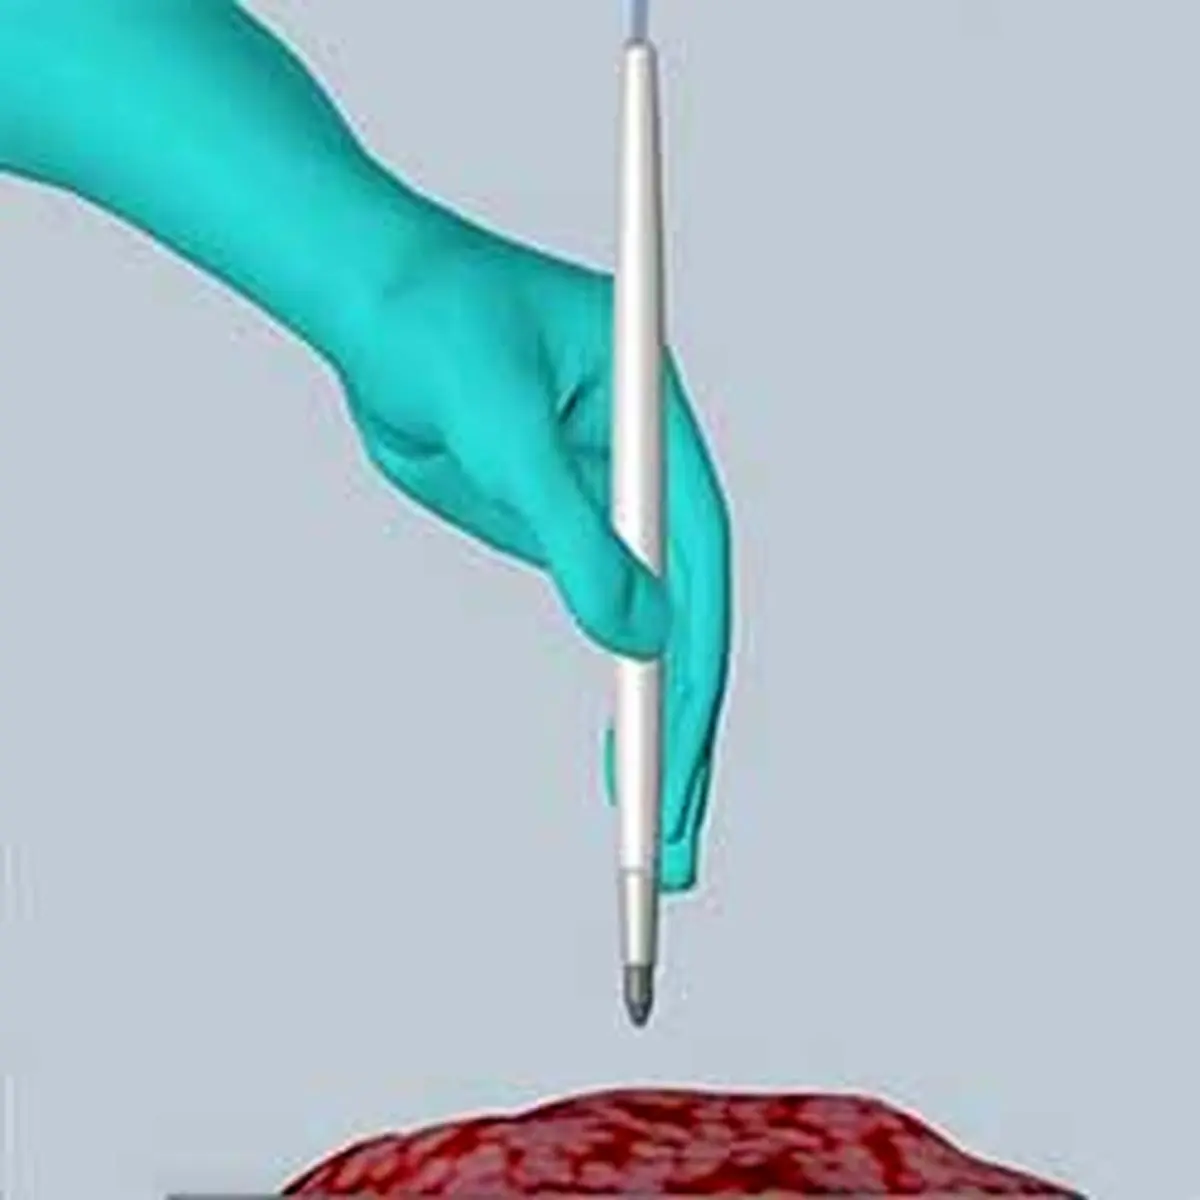  جدیدترین روش تشخیص سرطان در چند ثانیه با یک دستگاه قلمی شکل!